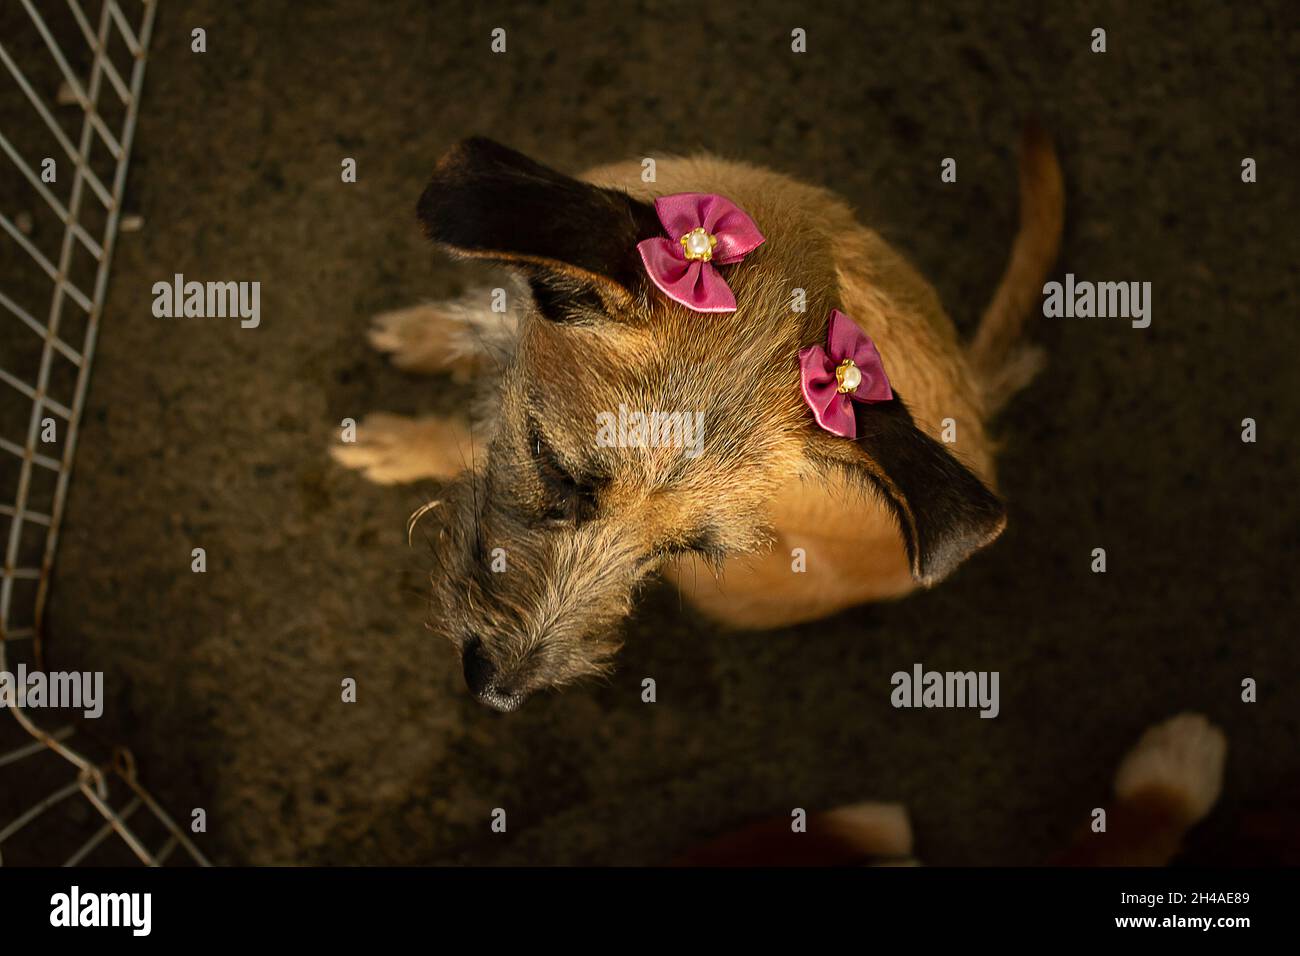 Ein Hund in der Feder auf der Adoptionsmesse. Veranstaltung von einem Tierheim für verlassene Tiere mit dem Ziel, ein Zuhause zu finden konzipiert. Stockfoto